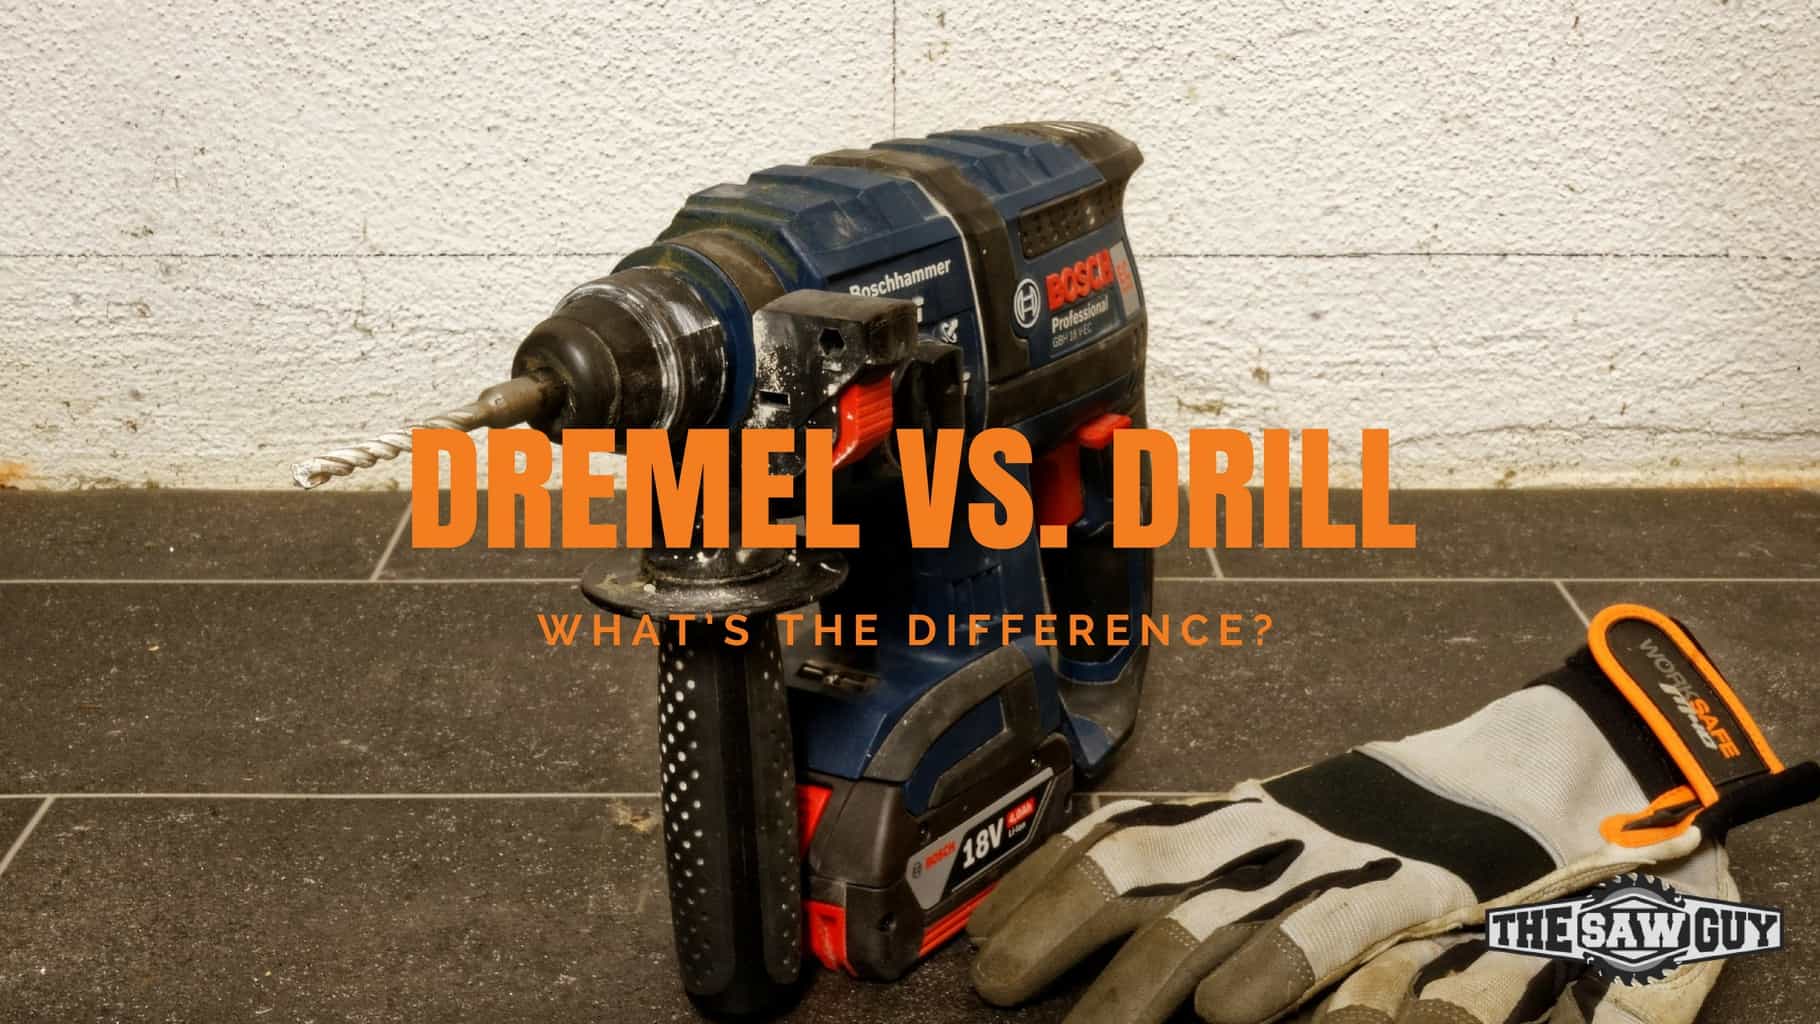 Dremel vs. Drill